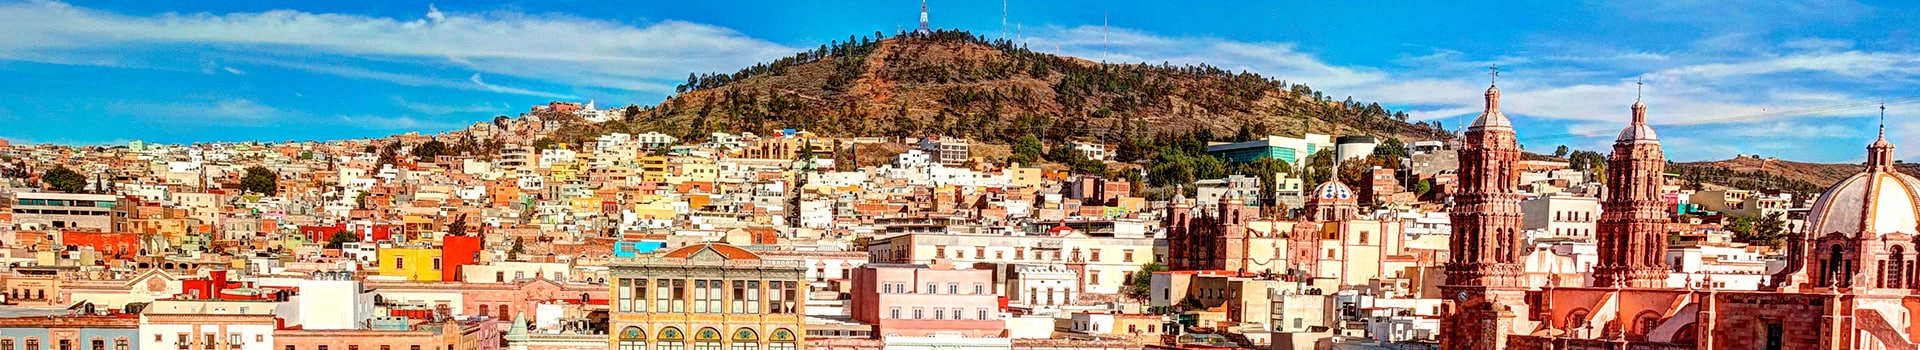 Tijuana - Zacatecas